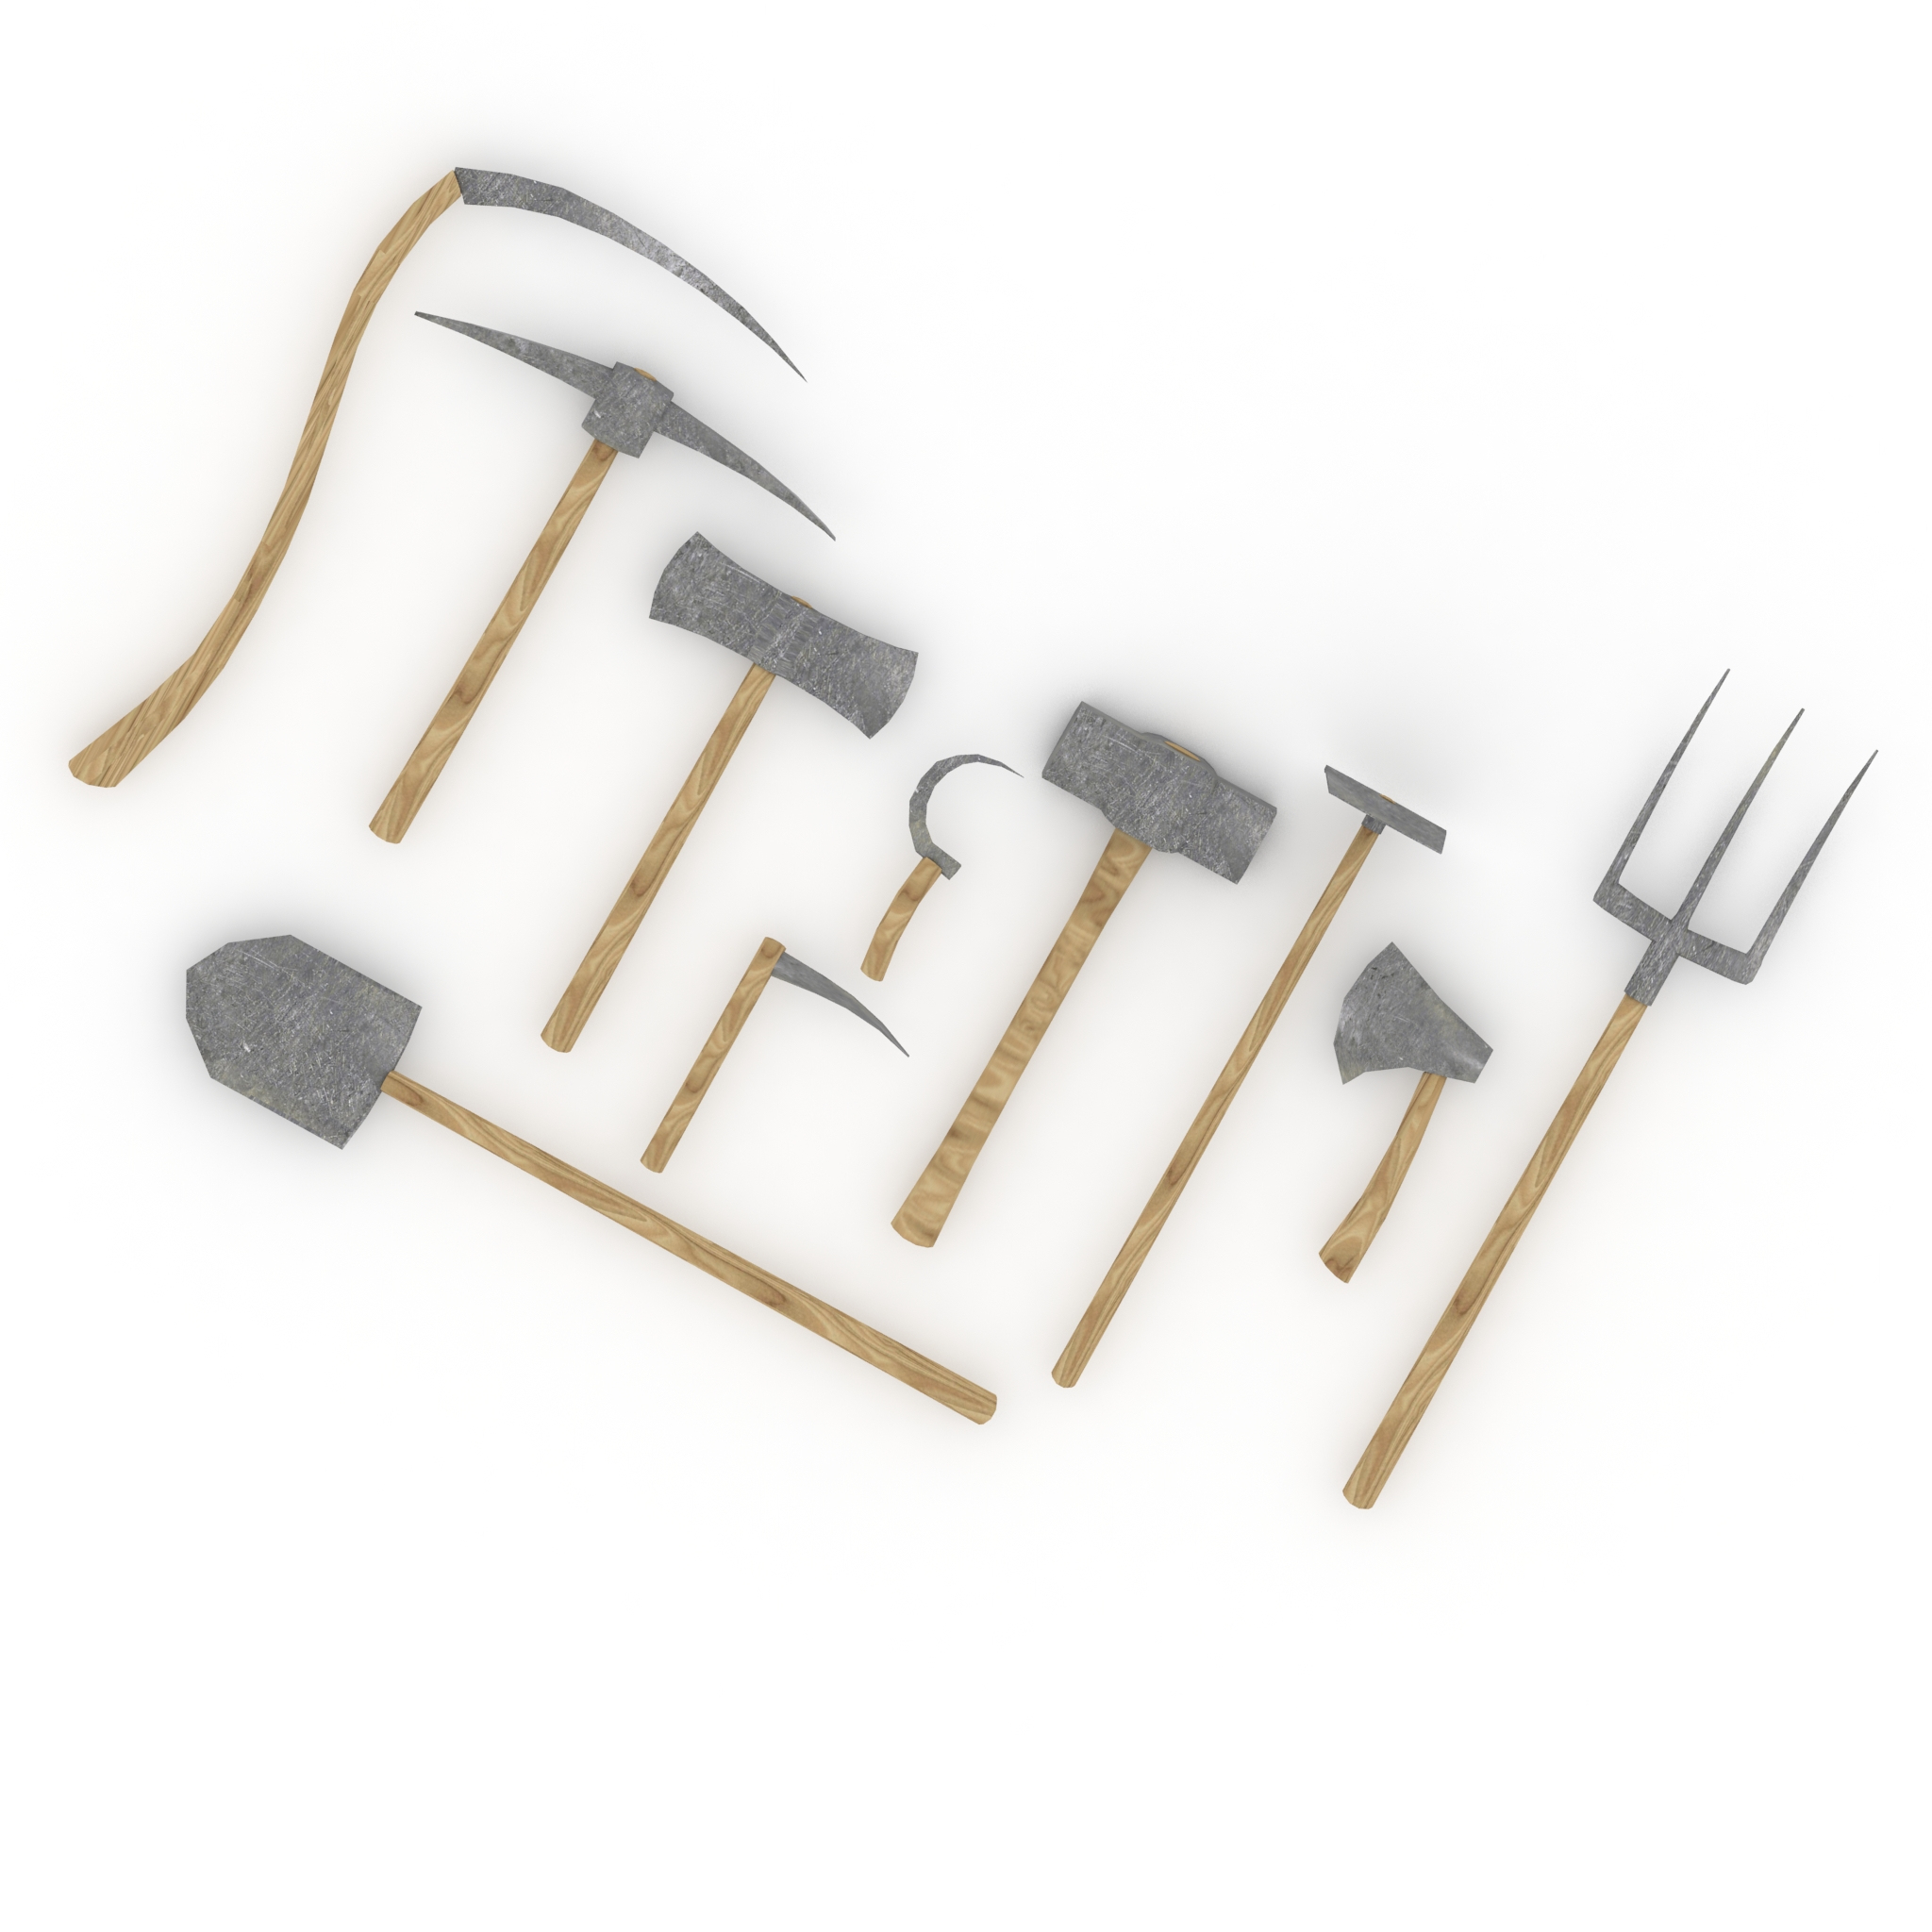 Medieval farming tools 3D - TurboSquid 1702249